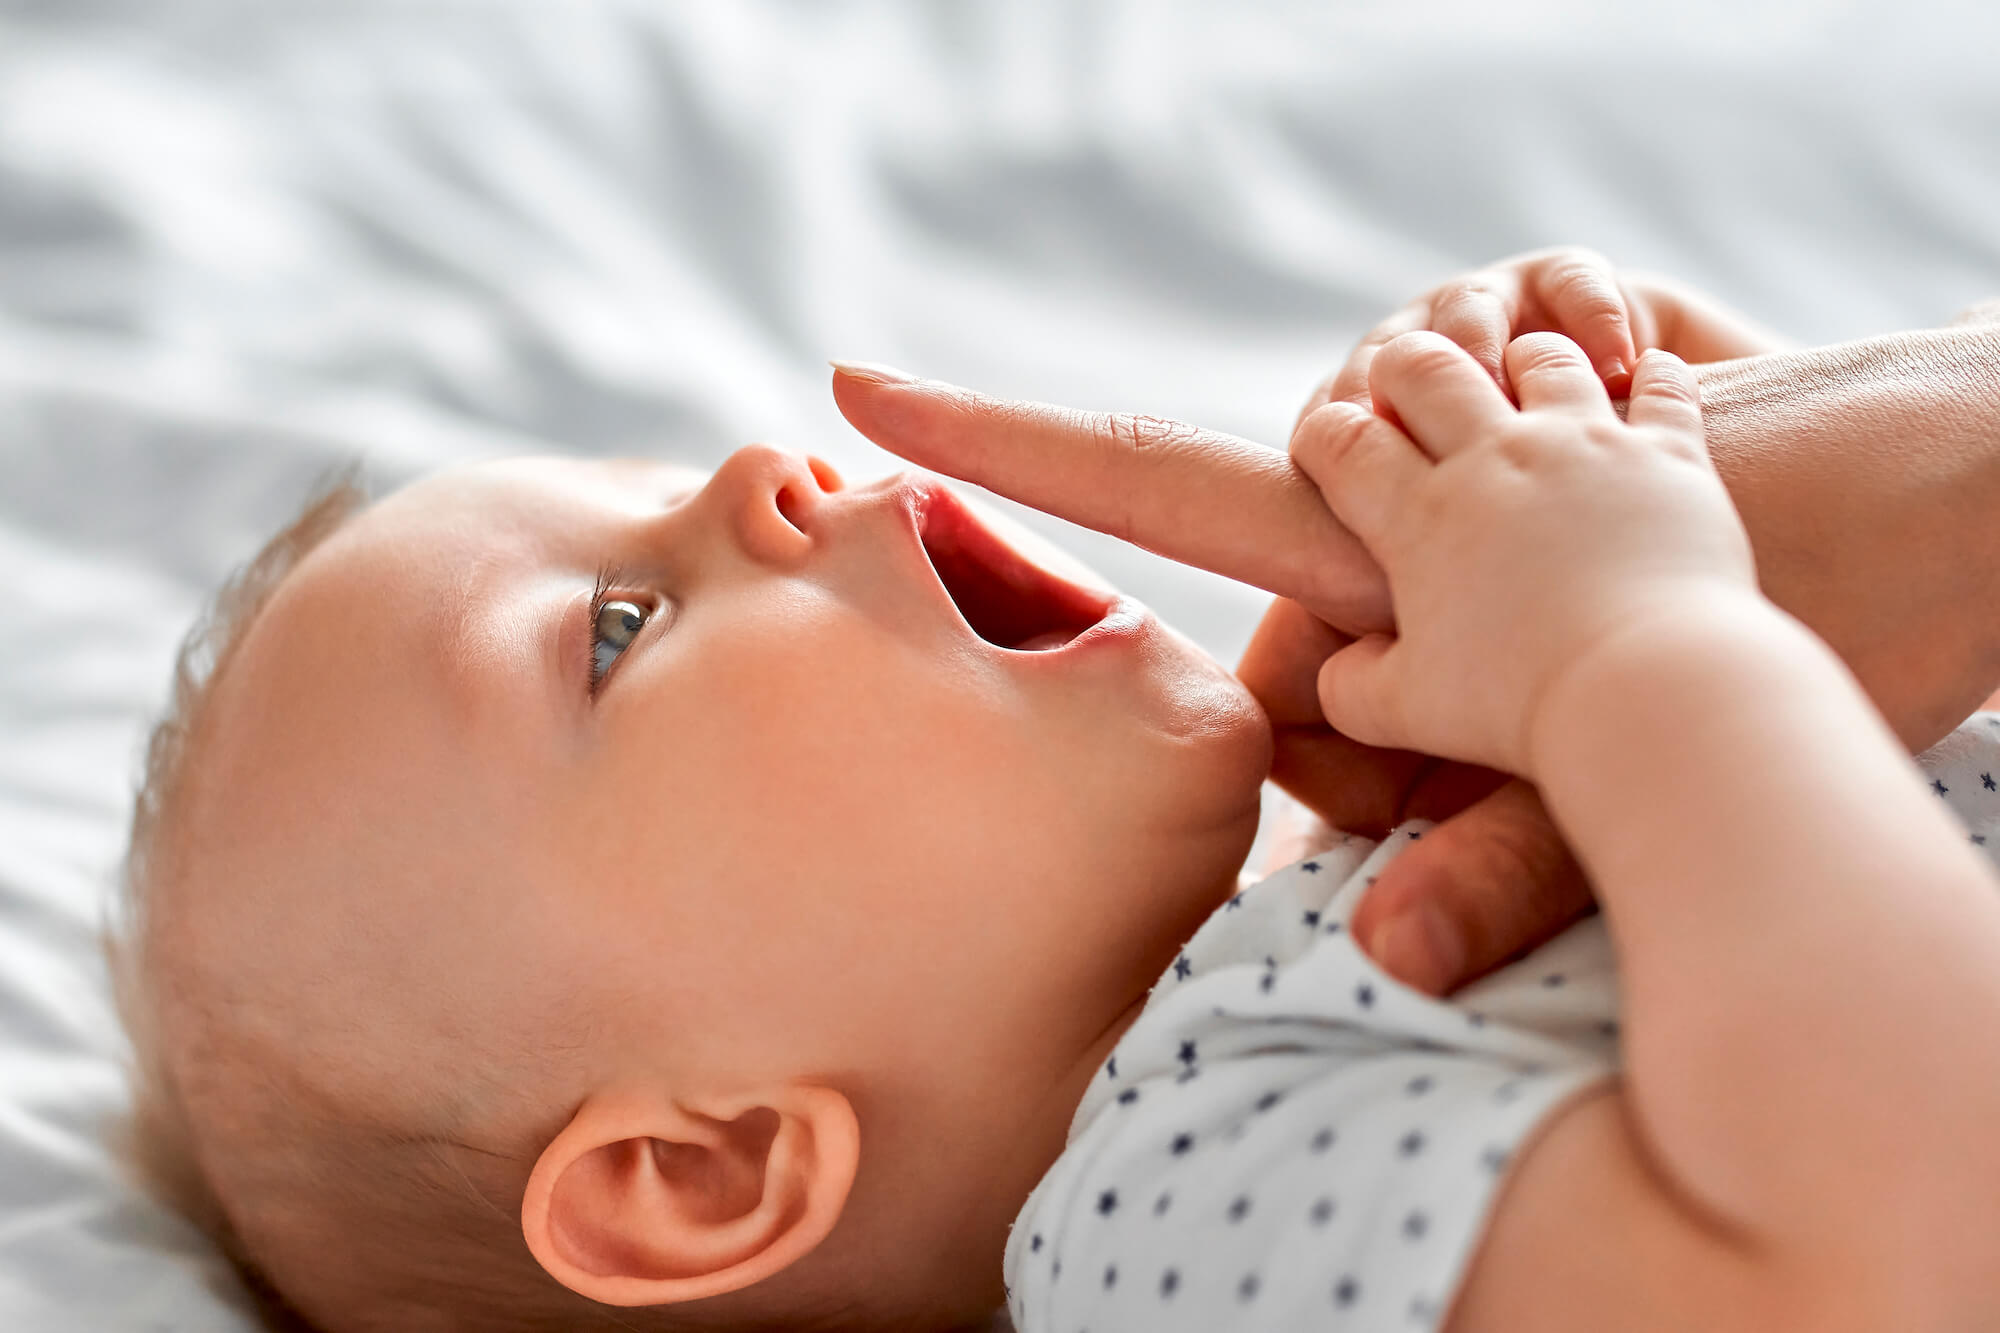 alteraciones bucodentales más frecuentes en bebés